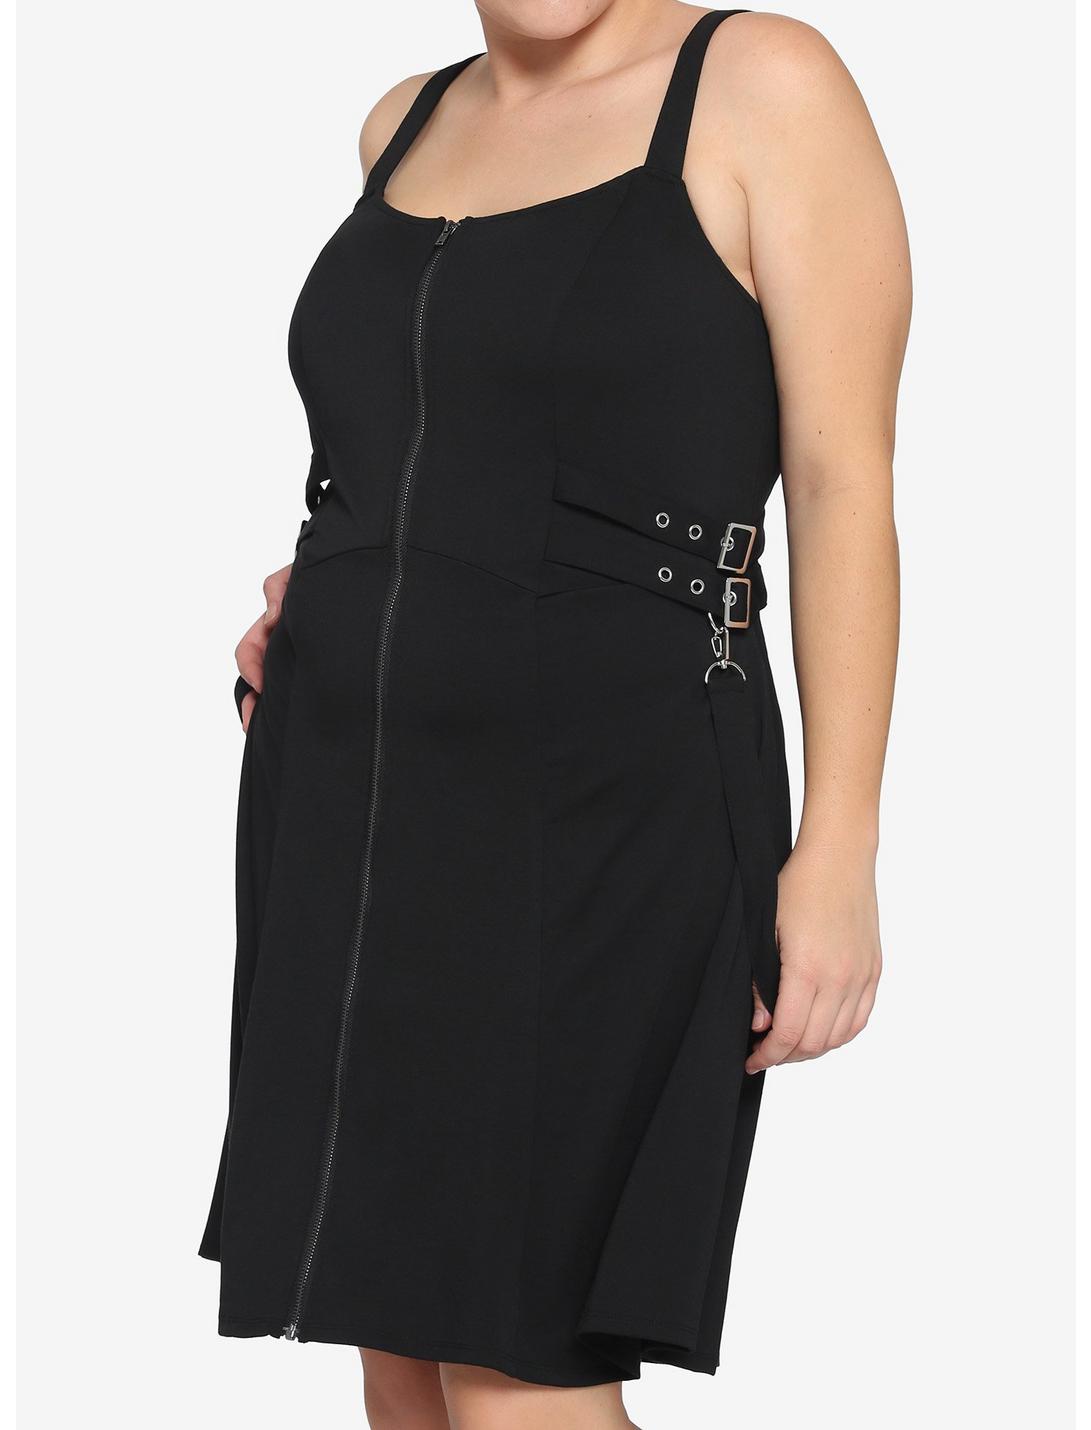 Black Zip Front Strap Dress Plus Size, BLACK, hi-res